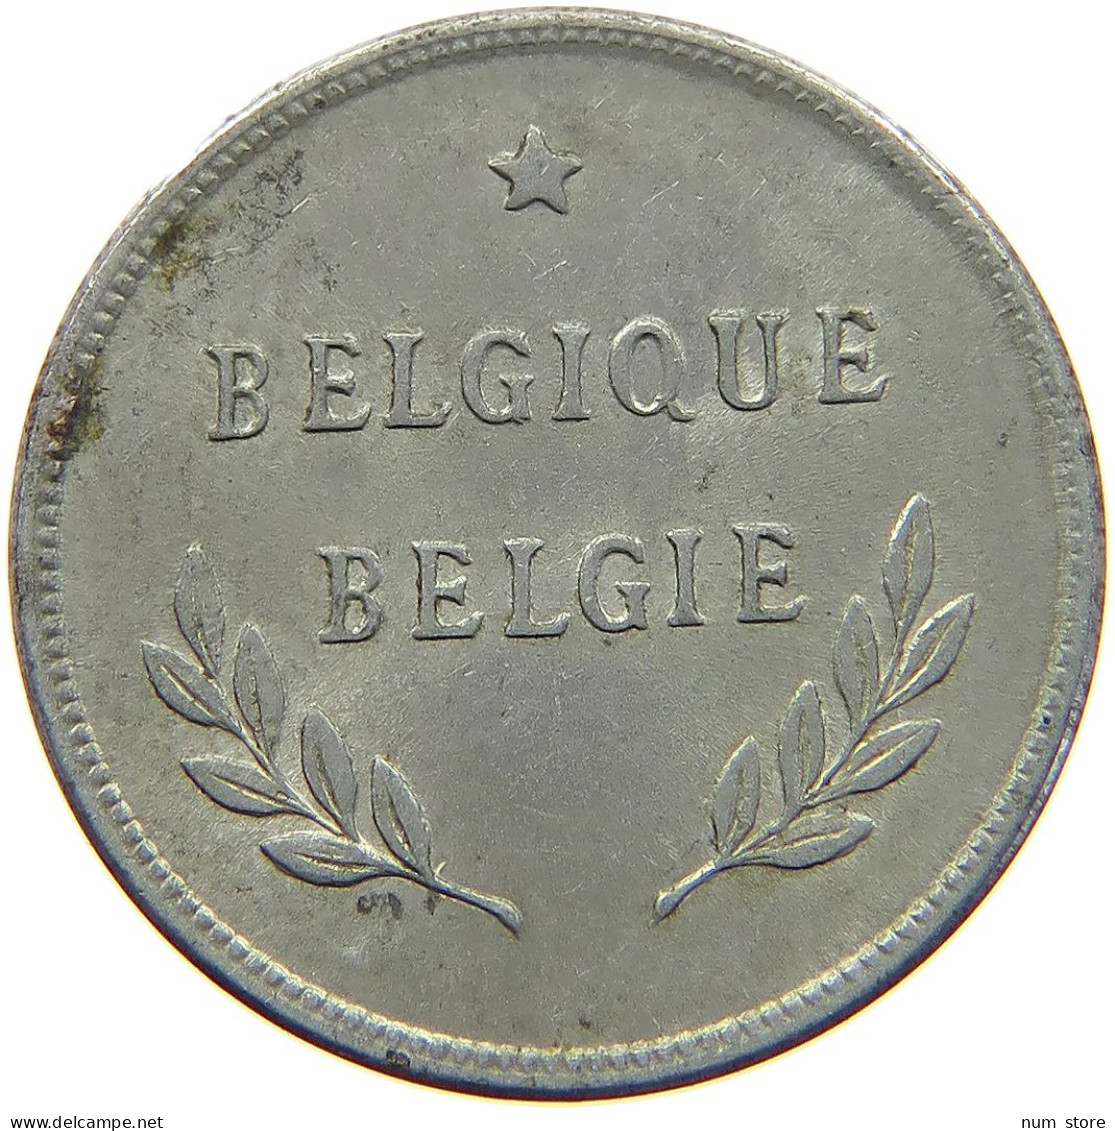 BELGIUM 2 FRANCS 1944 #c036 0045 - 2 Frank (1944 Befreiung)